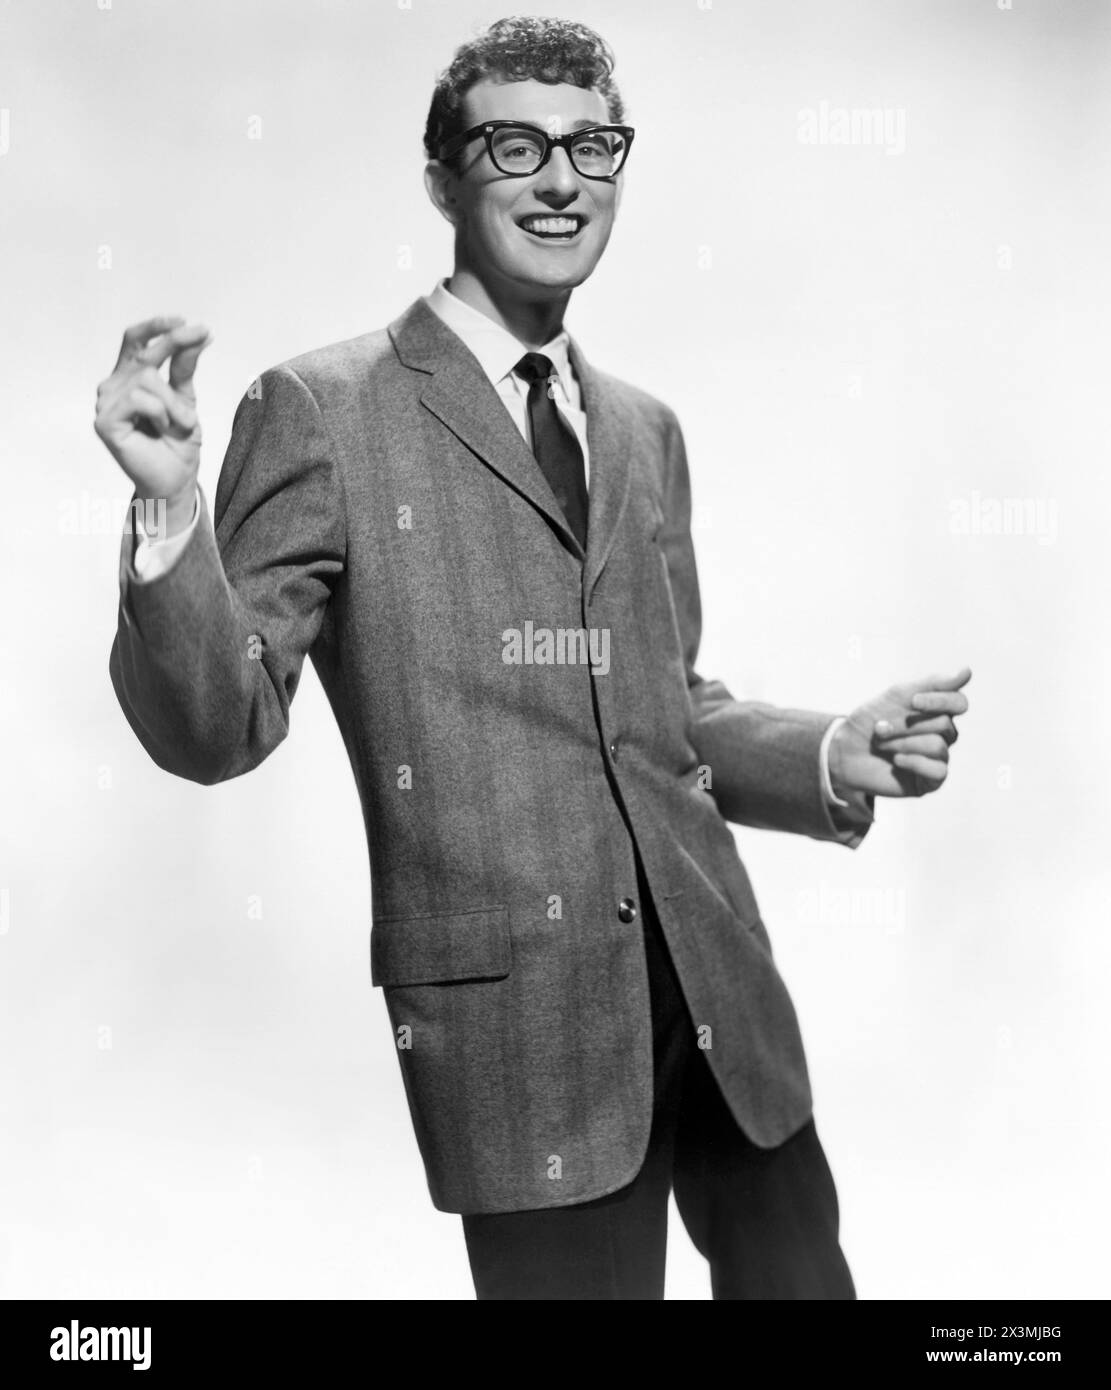 Buddy Holly, pionnier du rock and roll américain en 1957. Holly meurt à 22 ans dans un tragique accident d'avion en 1959, avec les musiciens Richie Valens et J. P. Richardson (The Big Bopper), et le pilote Roger Peterson. (ÉTATS-UNIS) Banque D'Images